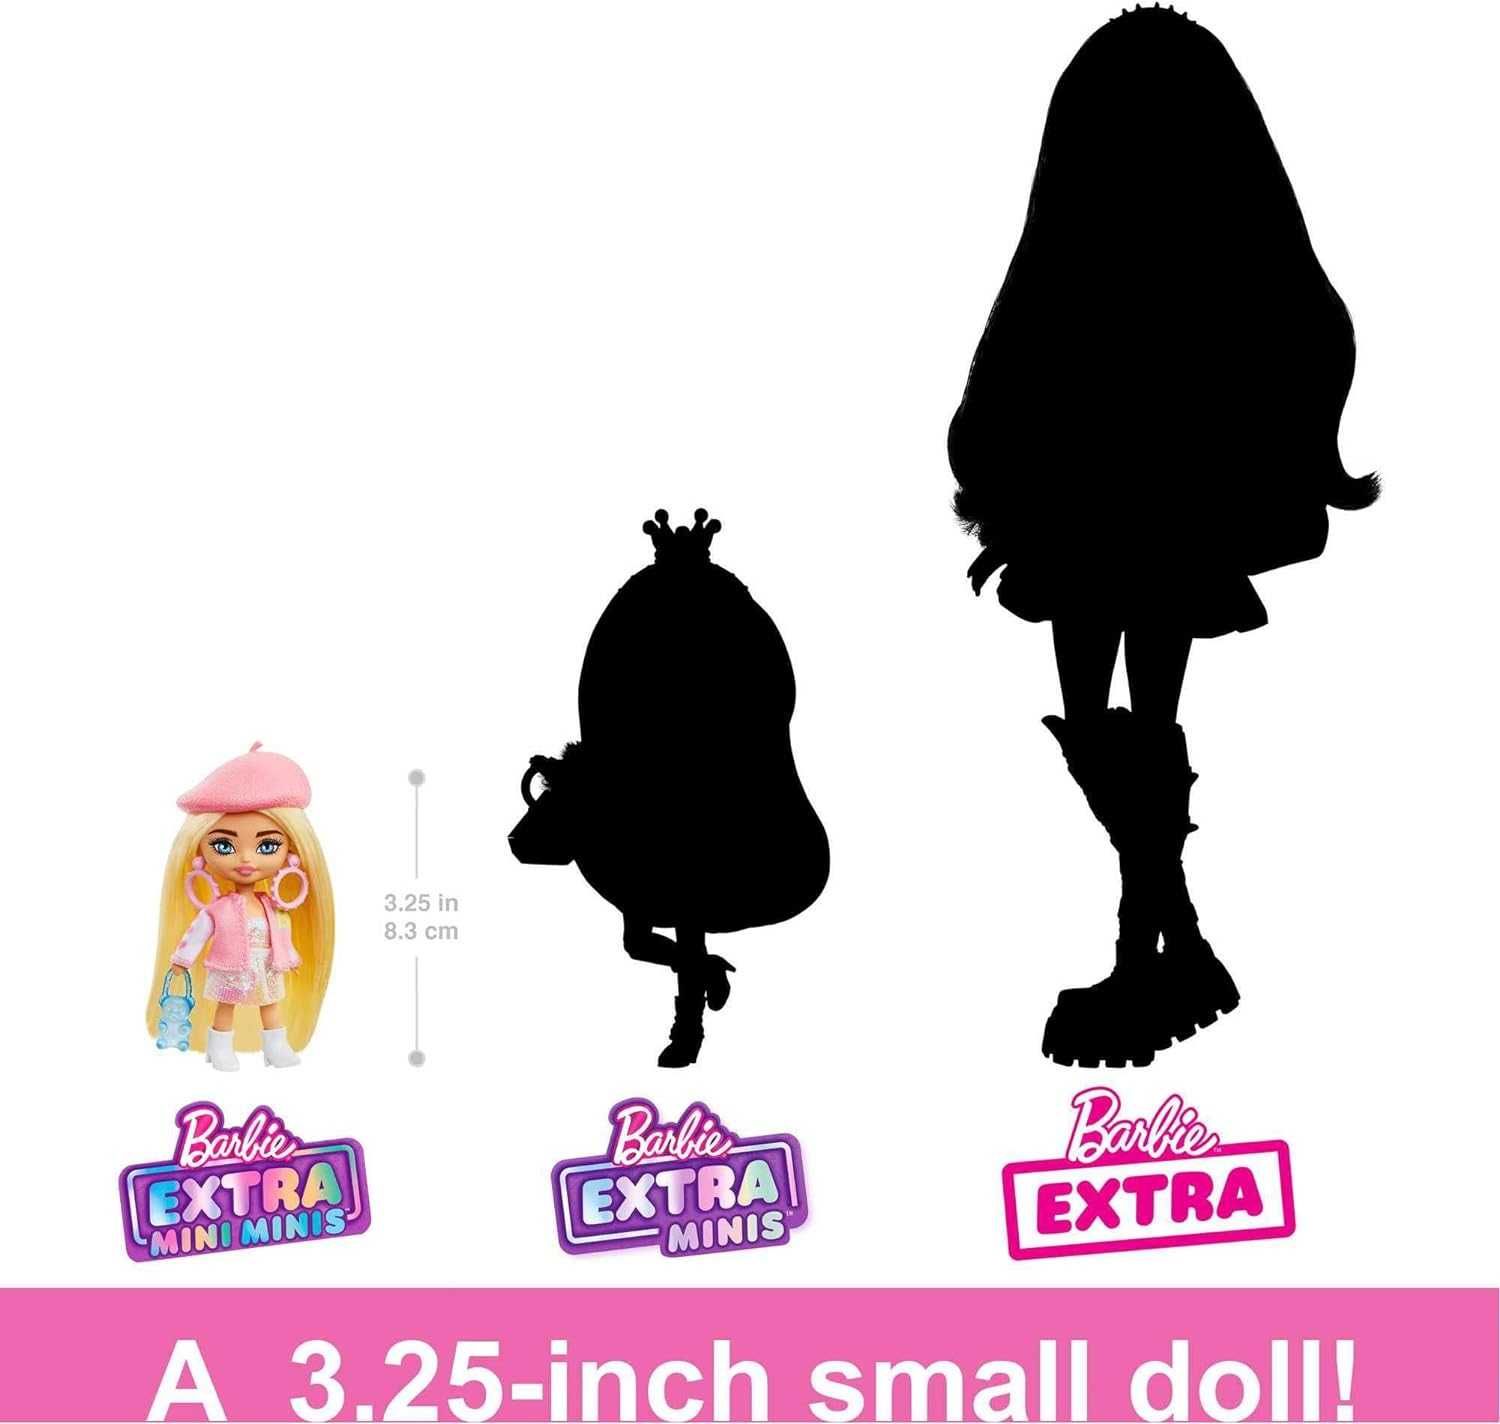 Barbie Extra Mini Minis Doll  Барбі Екстра Міні Мініc Блондинка